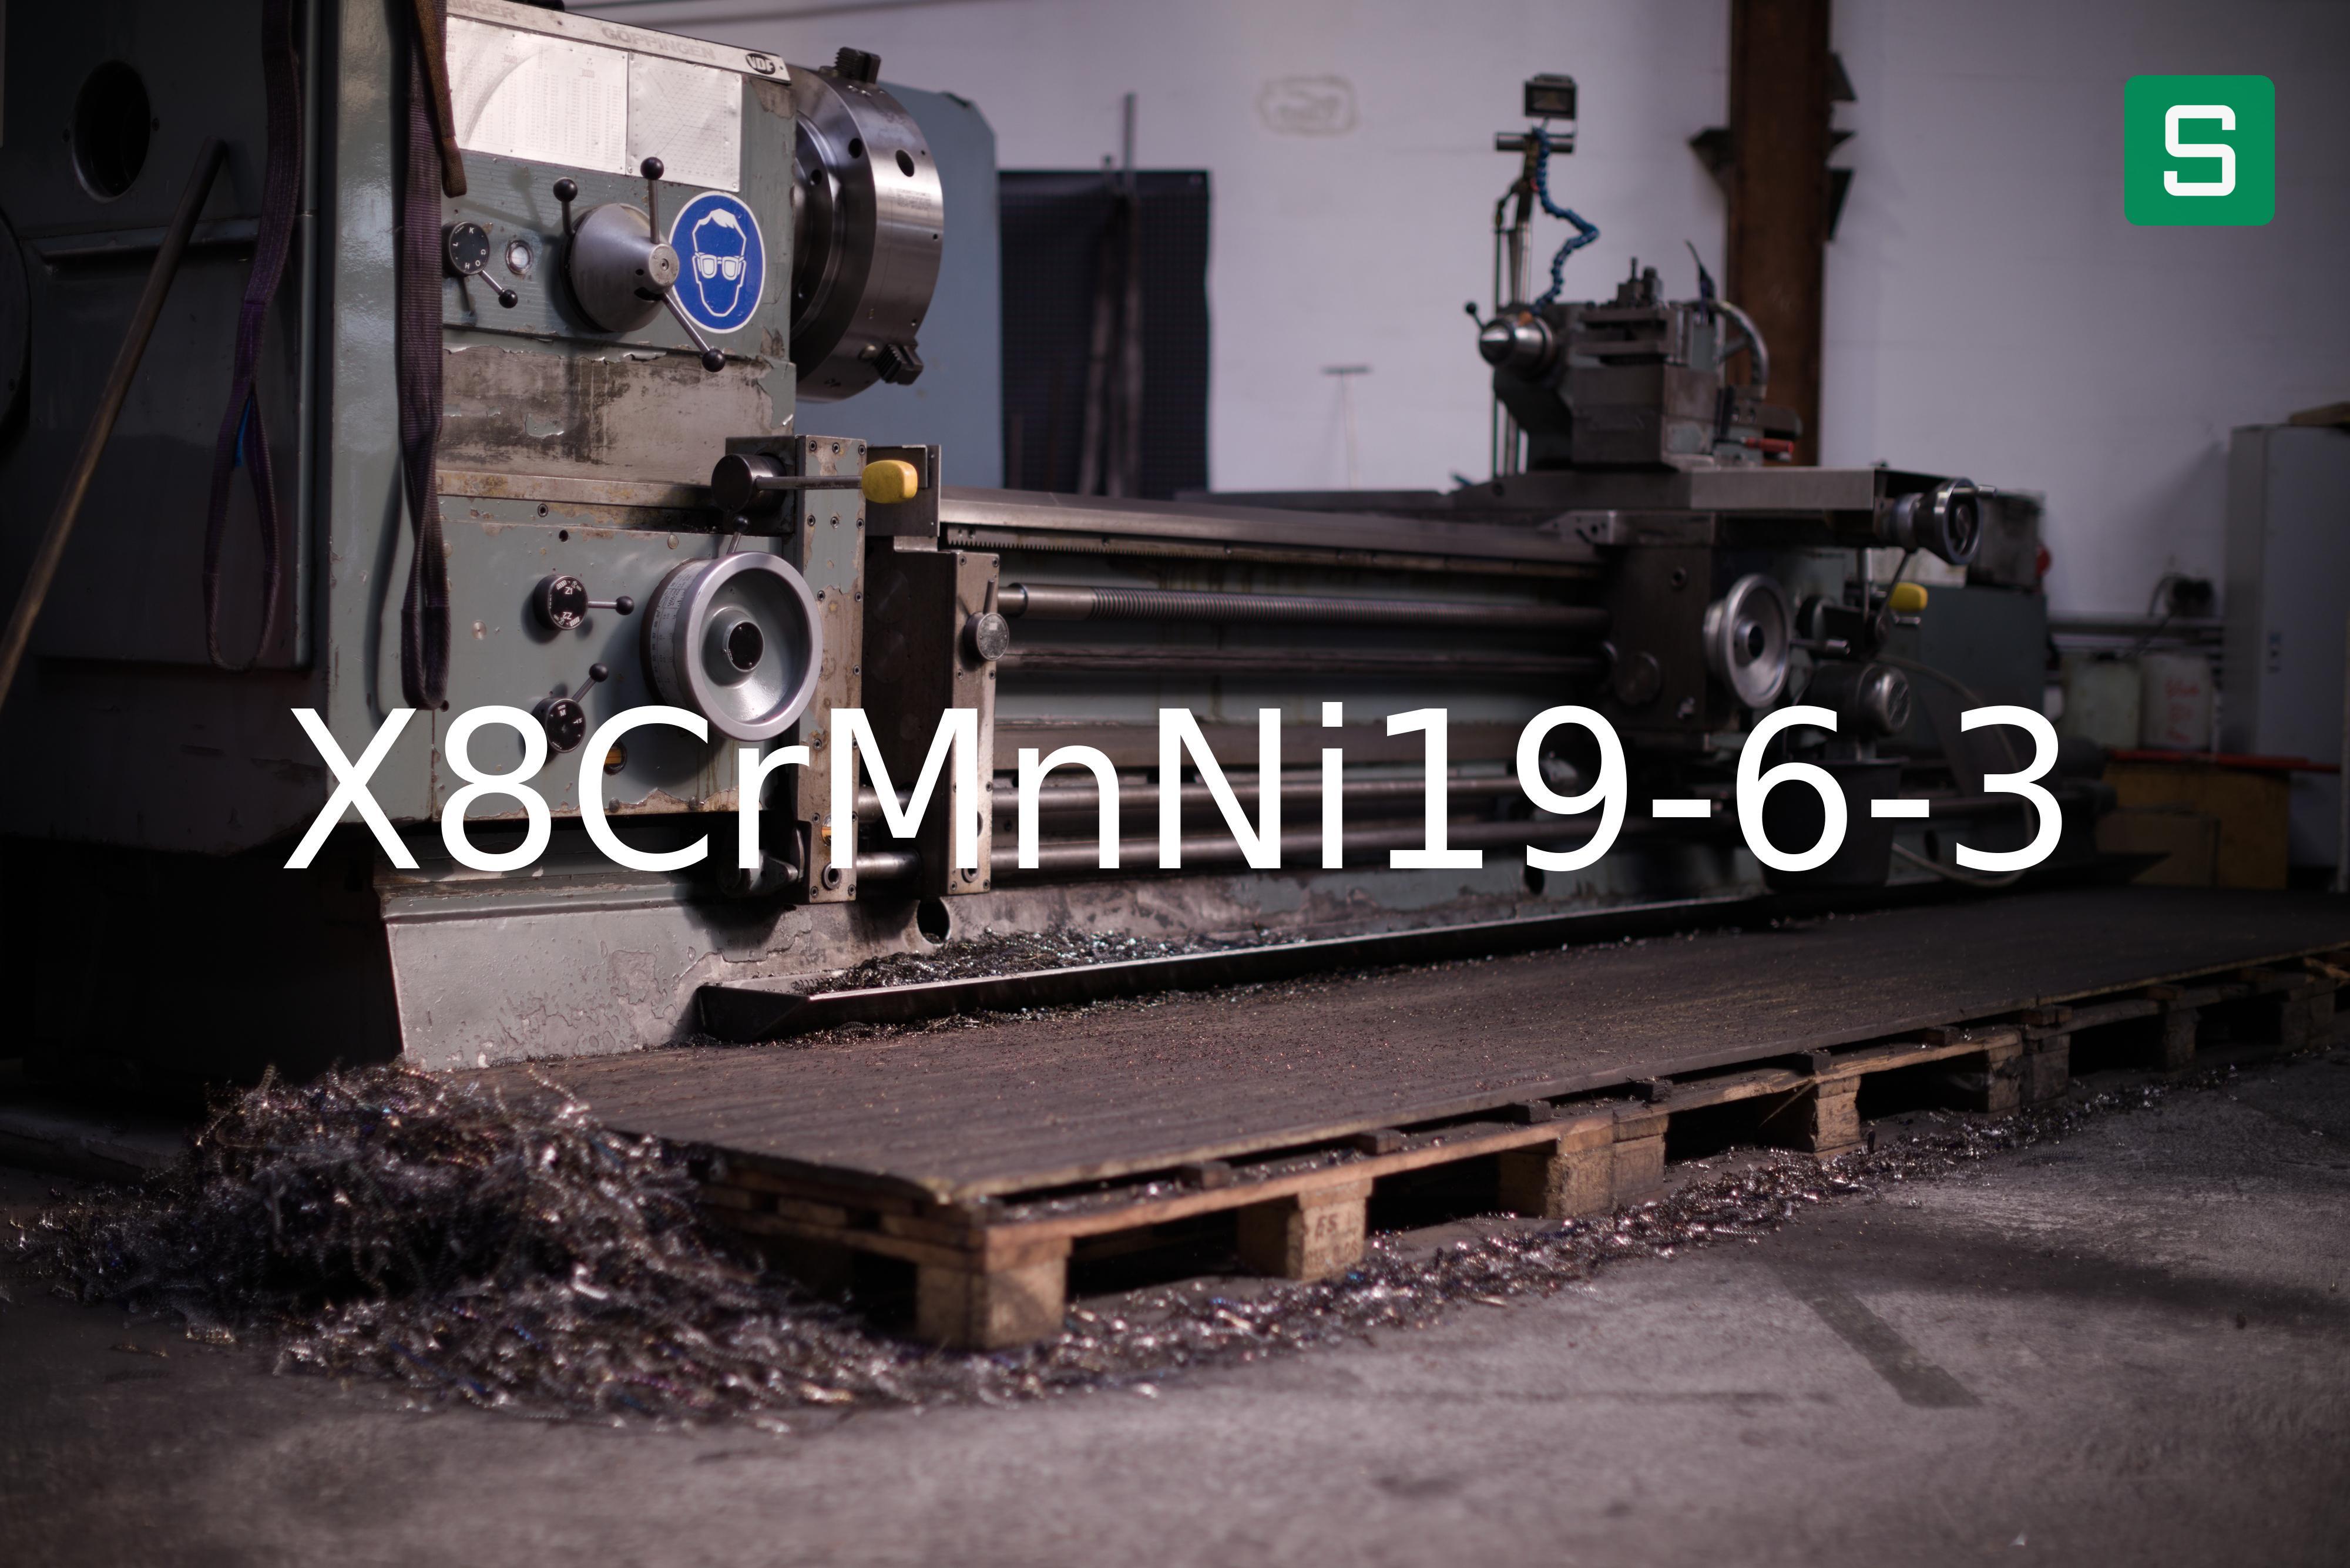 Steel Material: X8CrMnNi19-6-3